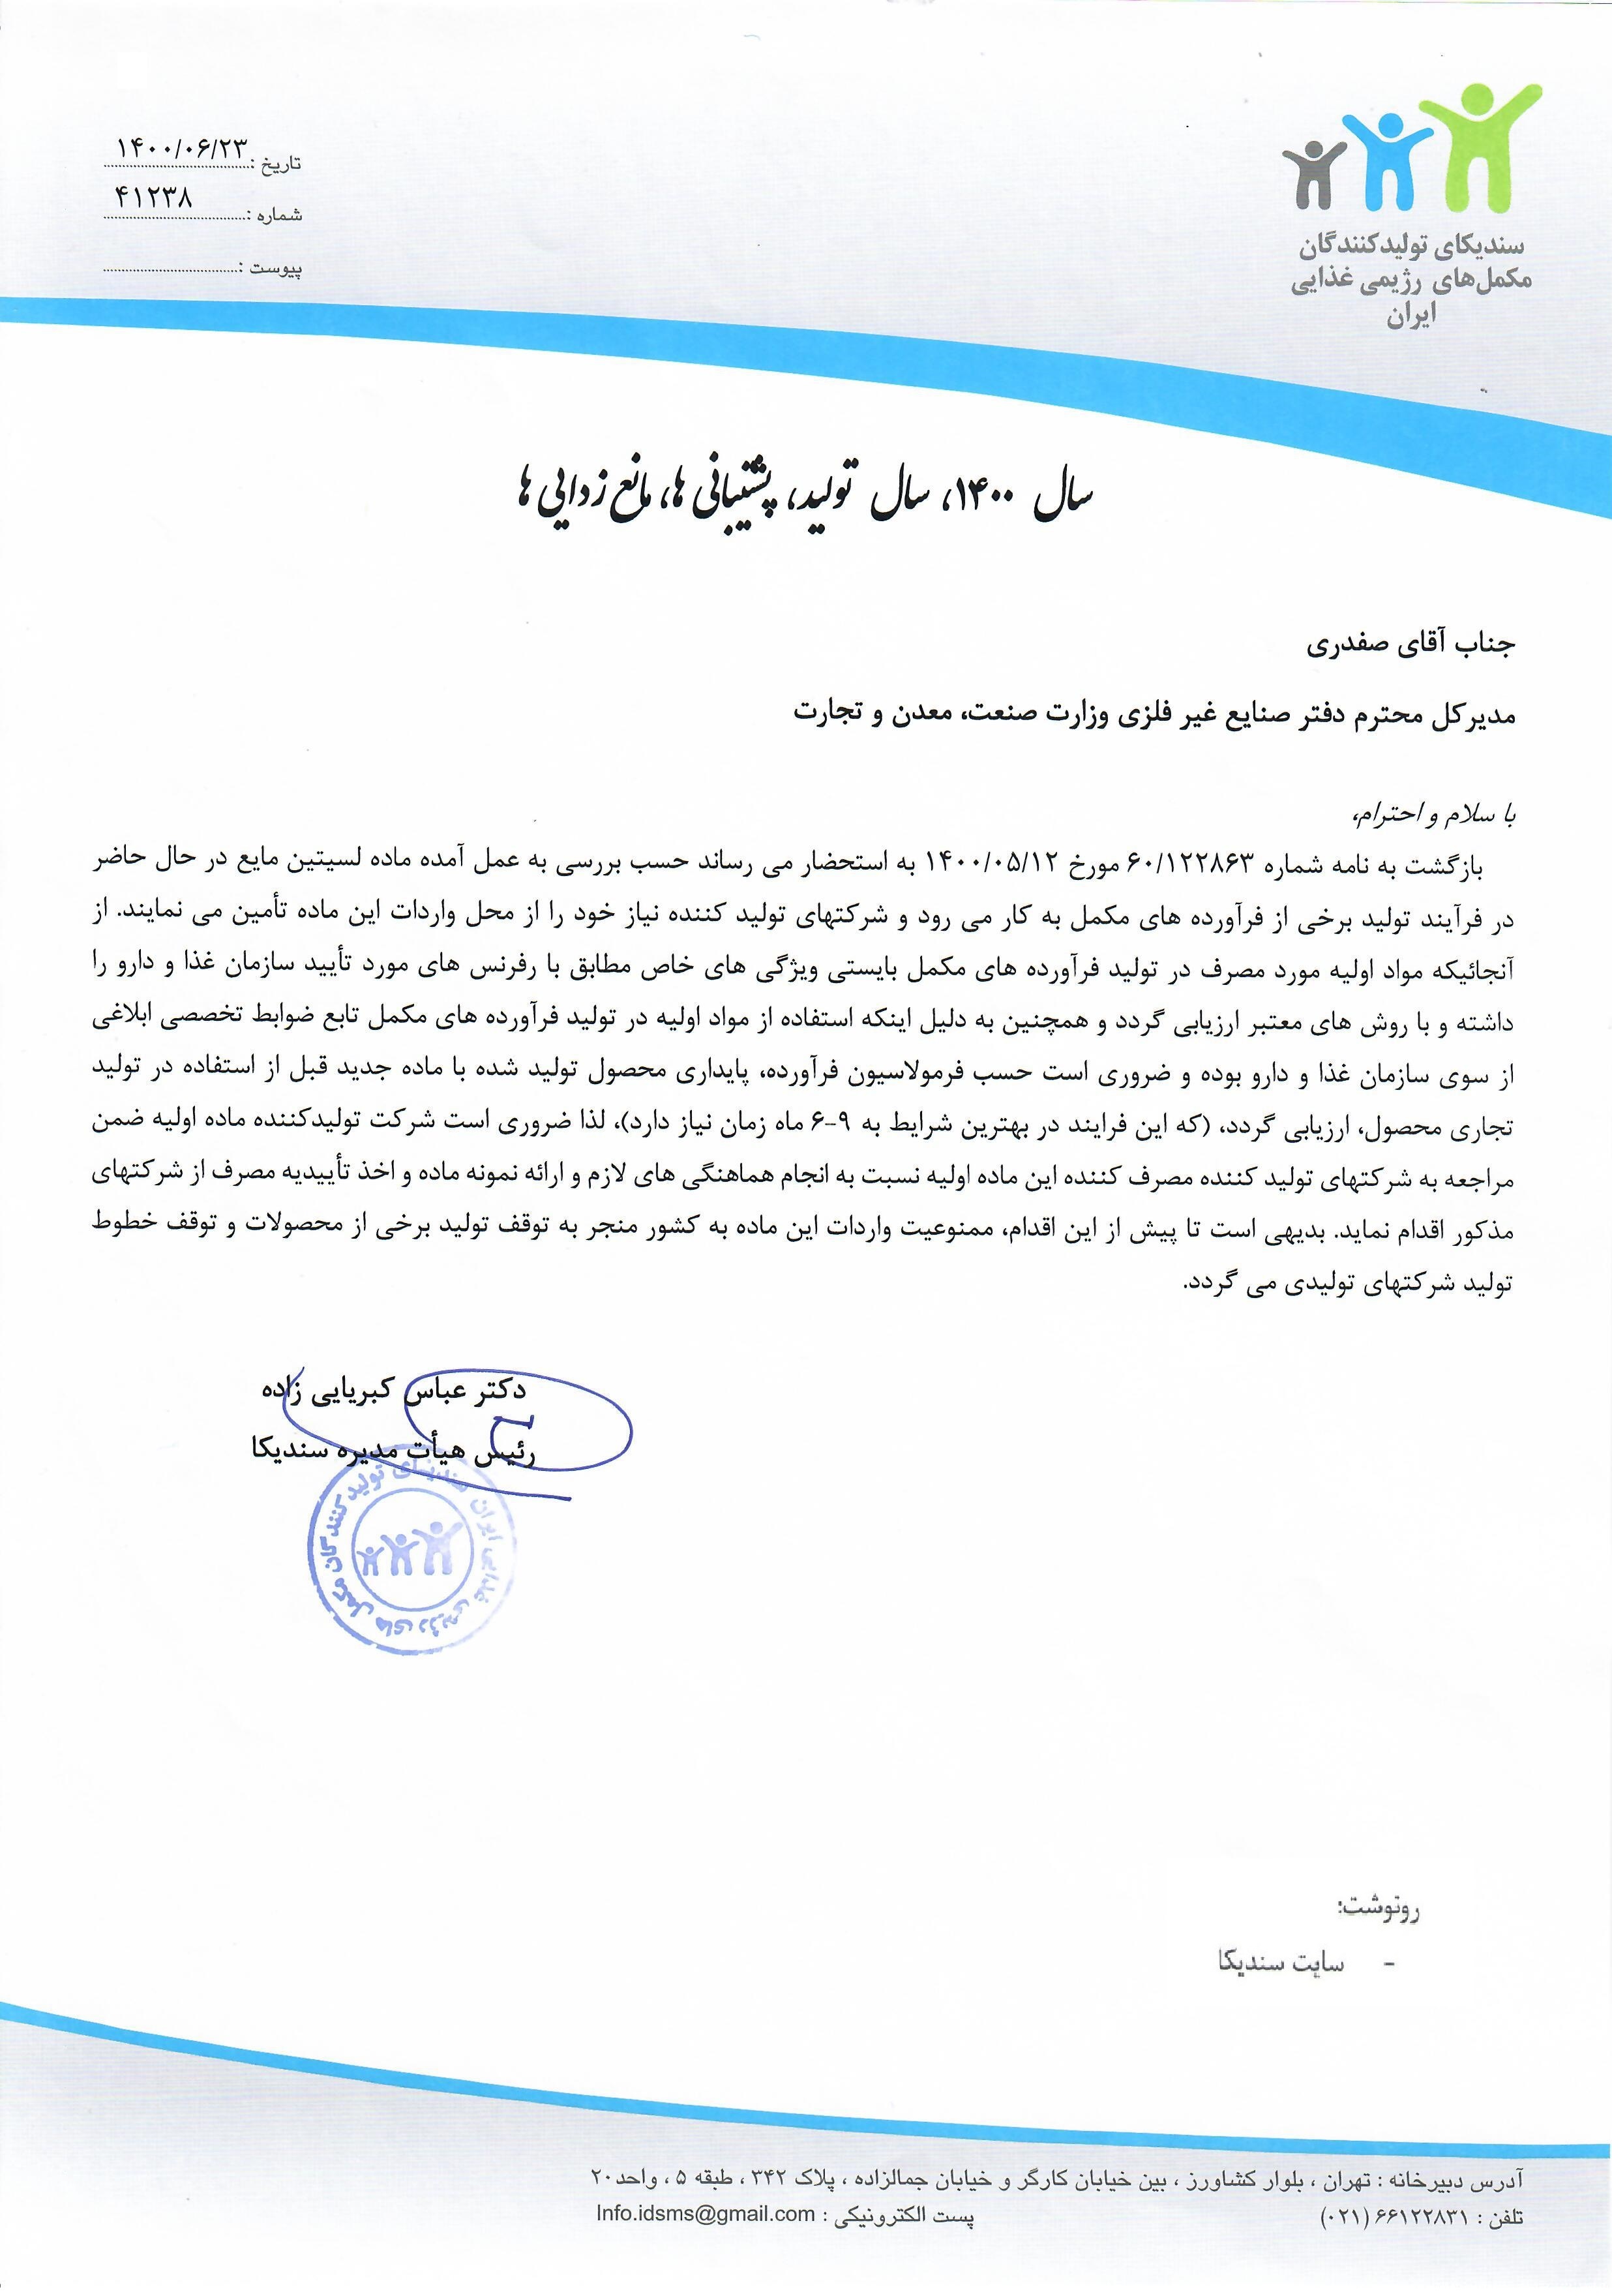 نامه به وزارت صنعت، معدن و تجارت در خصوص واردات ماده لسیتین مایع 